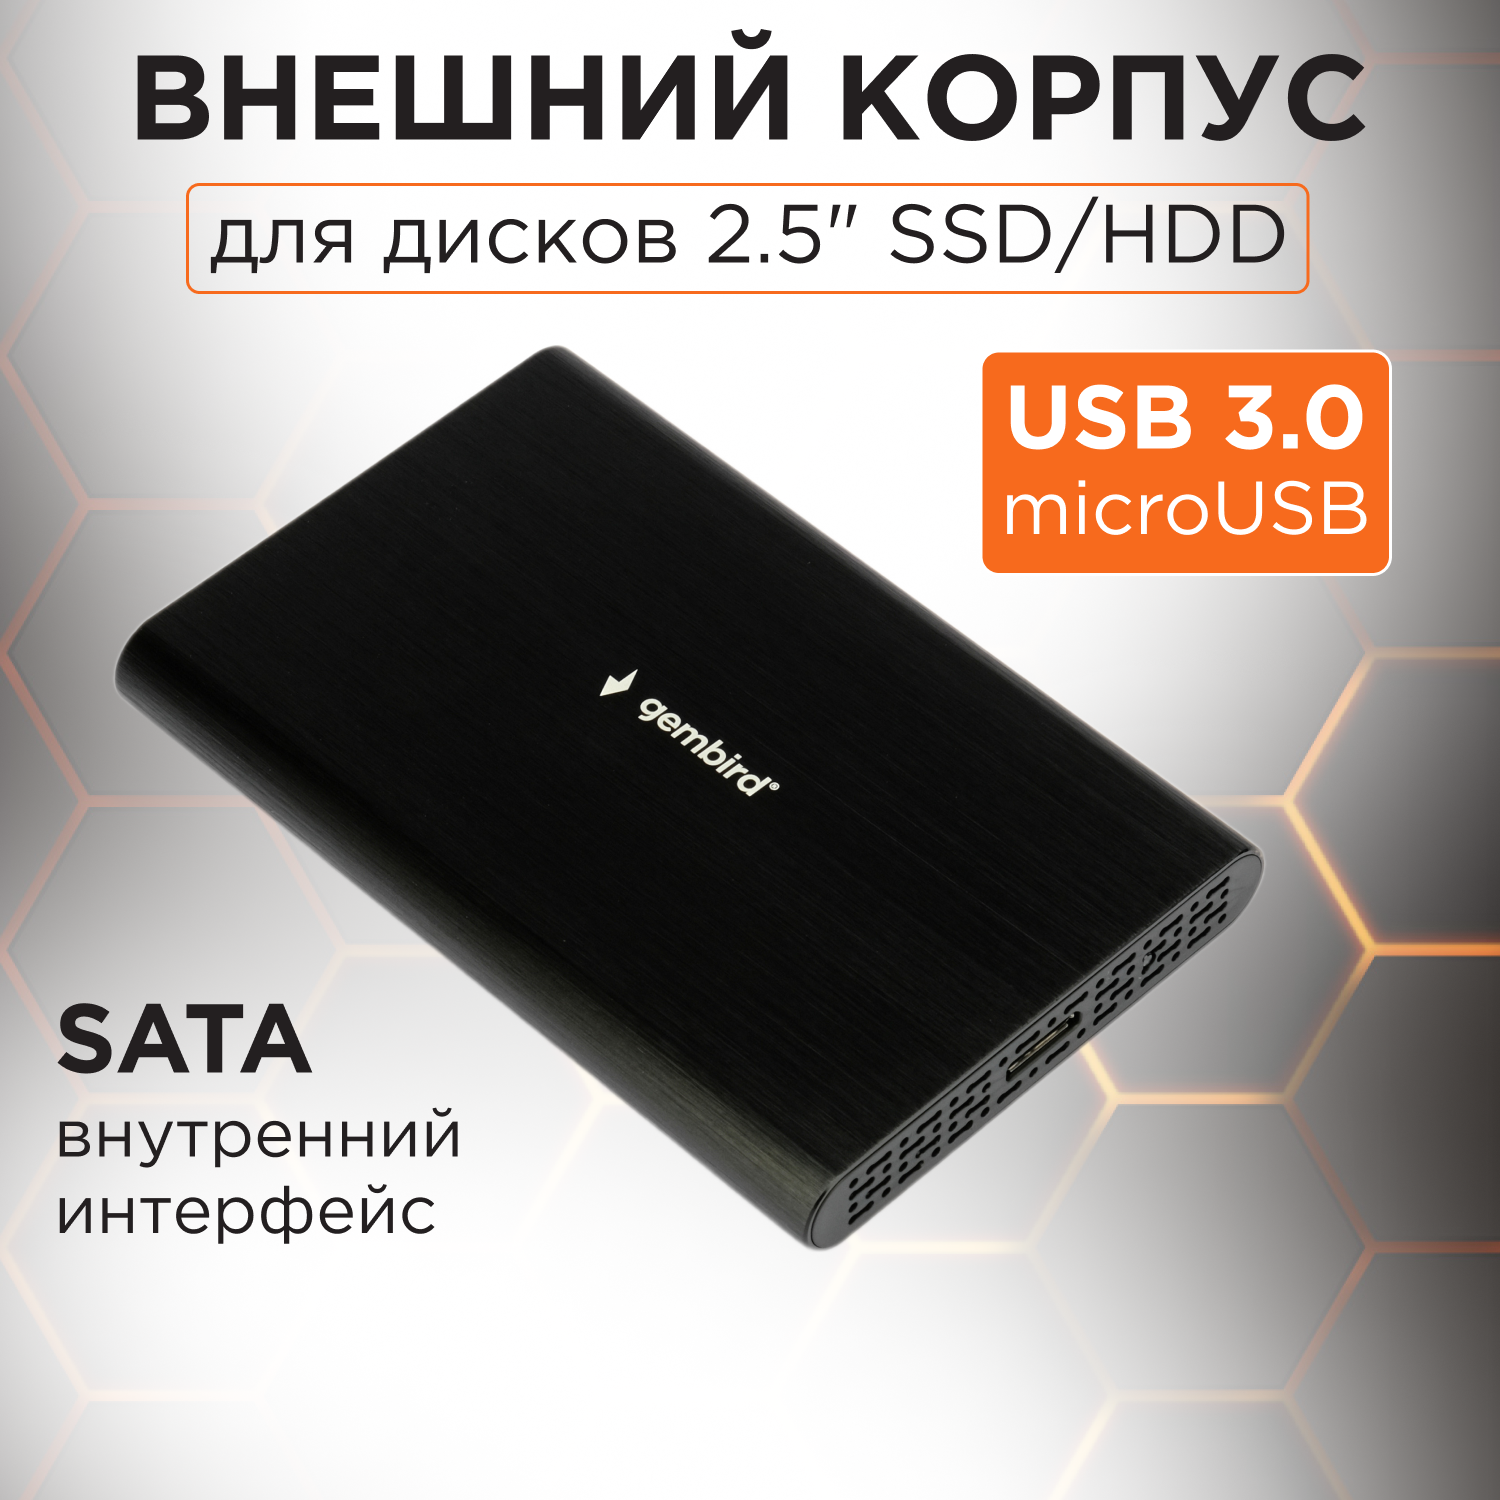 Внешний корпус для HDD 2.5" Gembird EE2-U3S-50, алюминий, чёрный, USB 3.0